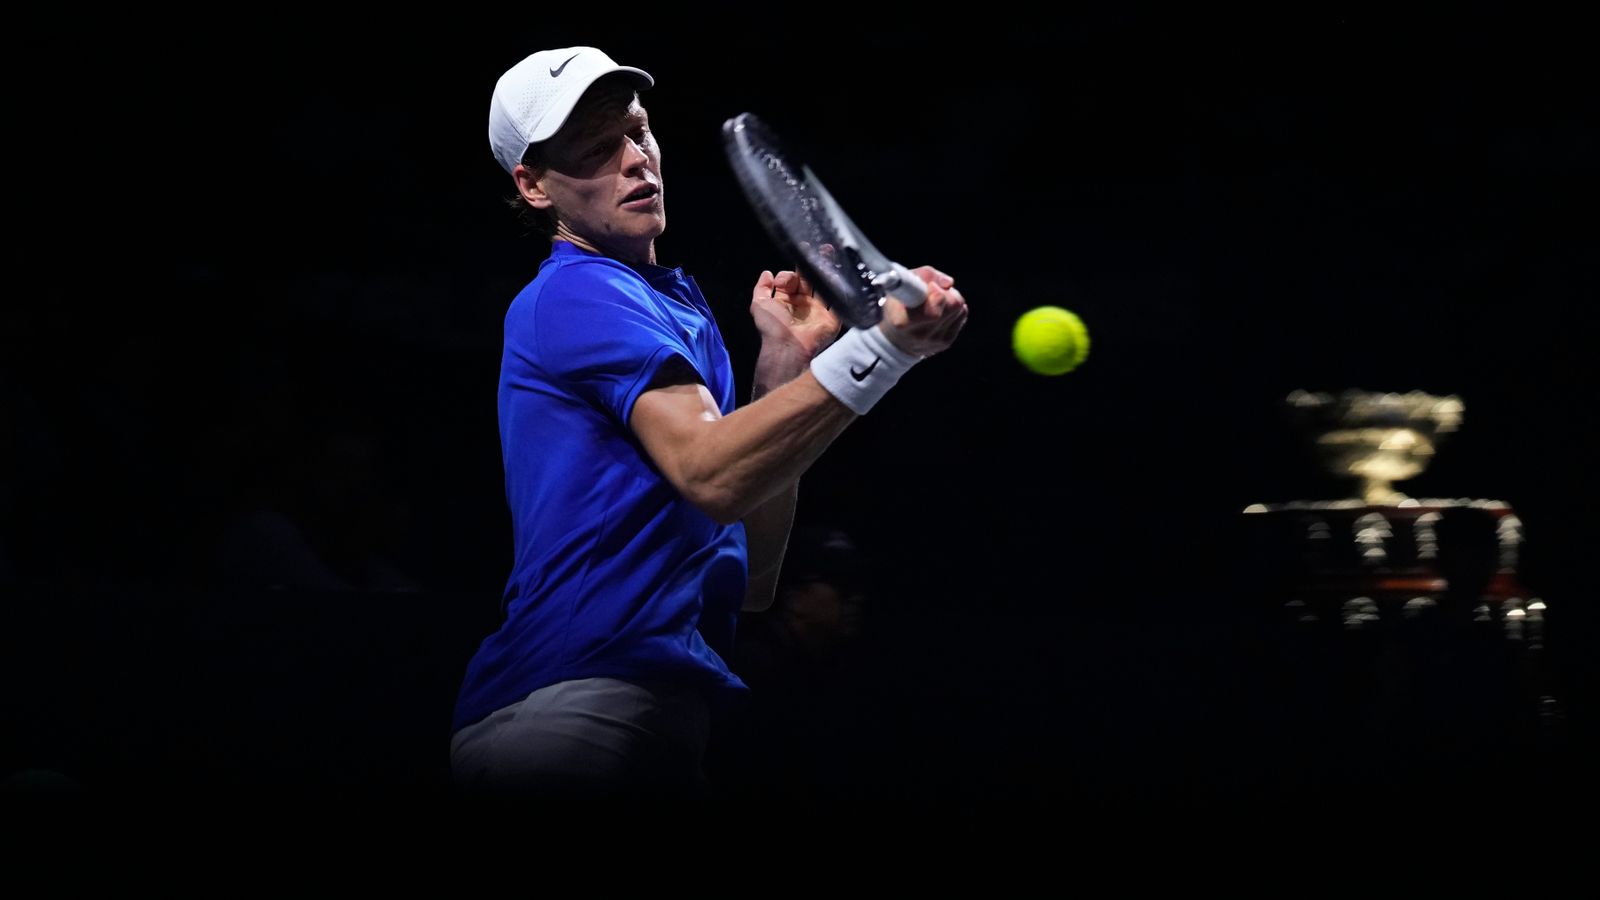 Jannik Sinner lleva a Italia a ganar la Copa Davis por primera vez en 47 años tras derrotar a Novak Djokovic en semifinales |  Noticias de tenis